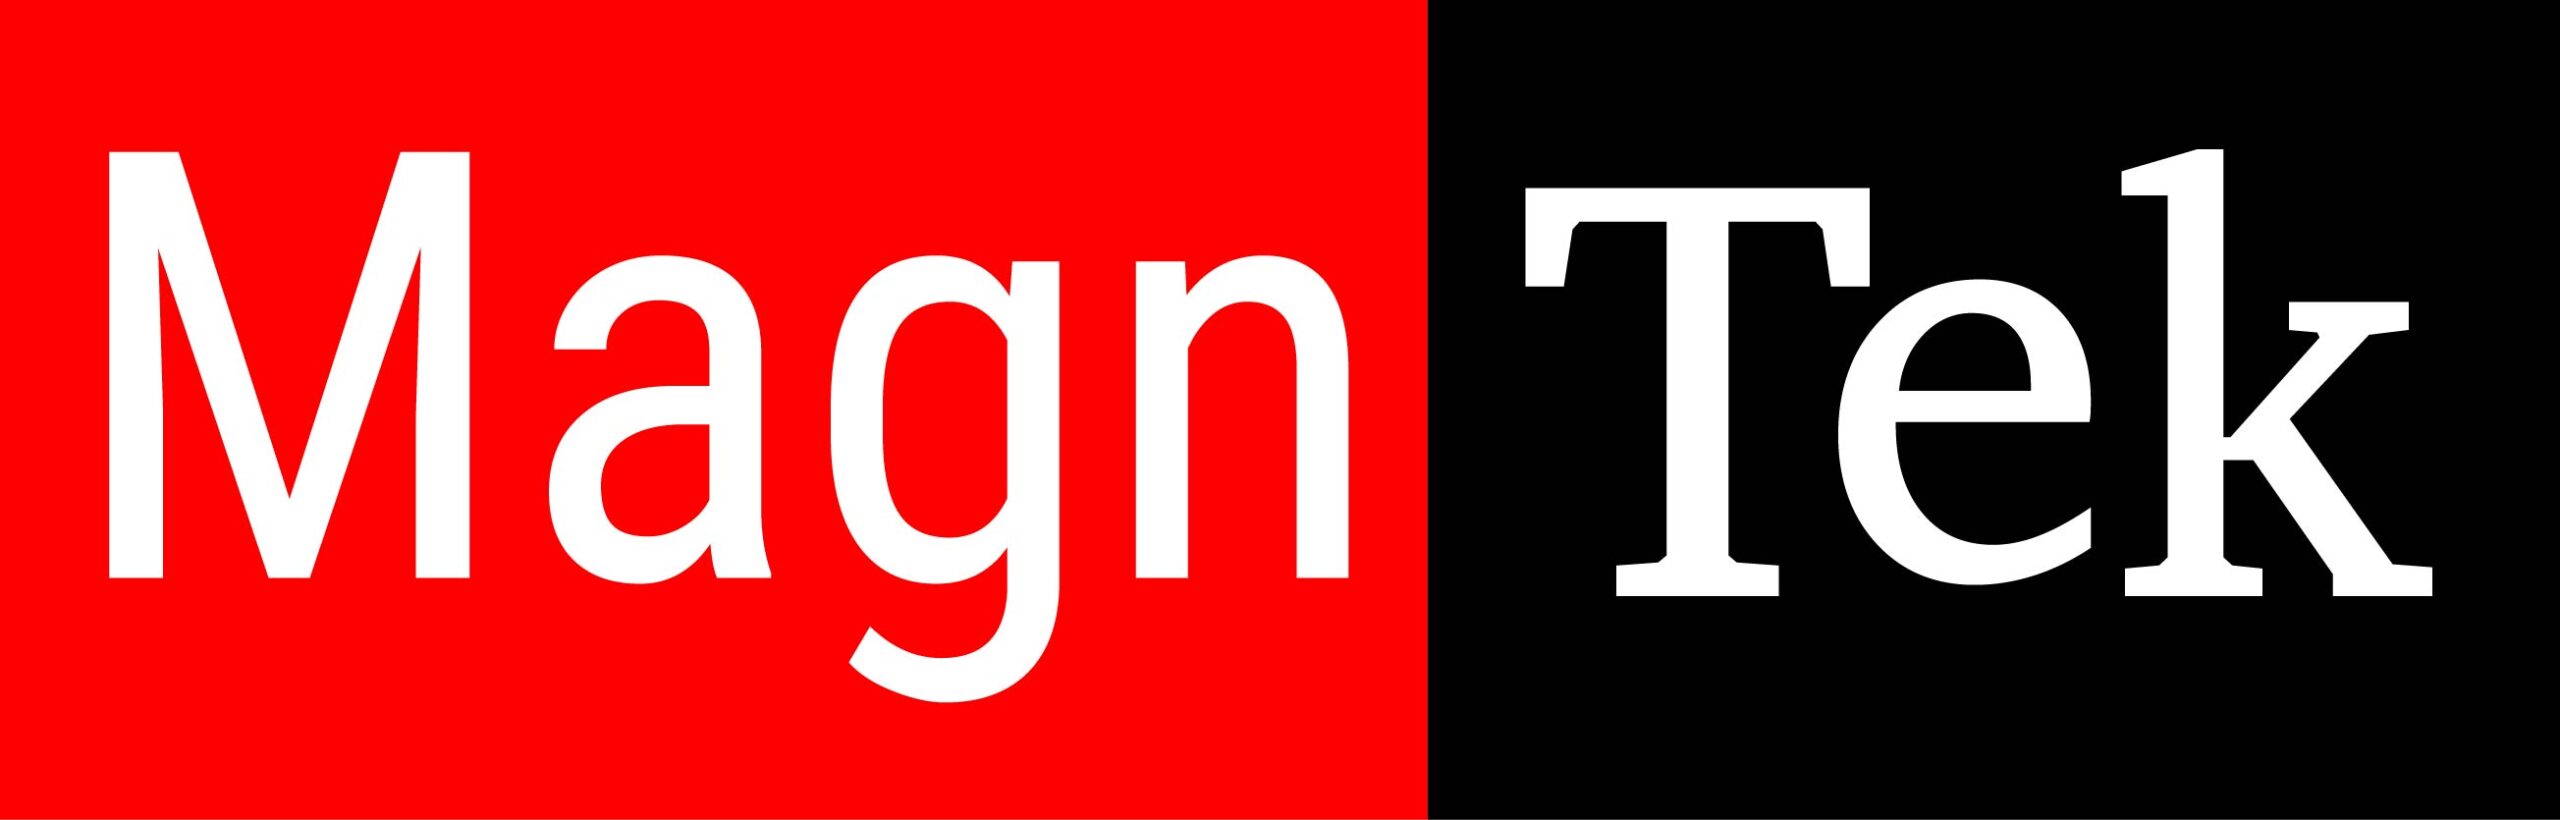 Magntek Logo in red and black